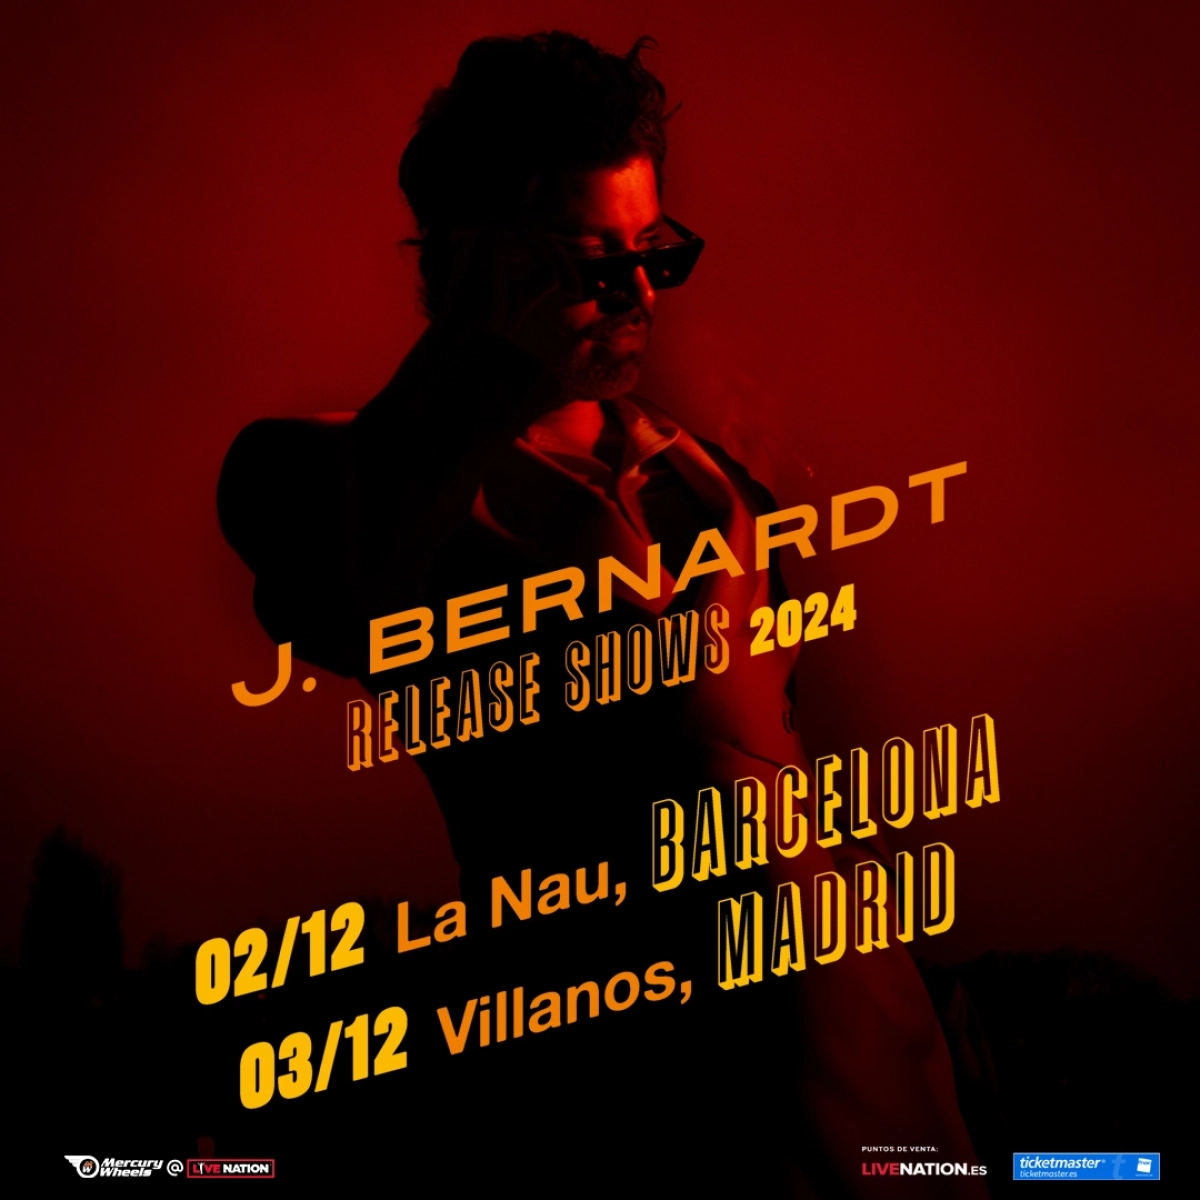 J. Bernardt al La Nau Tickets